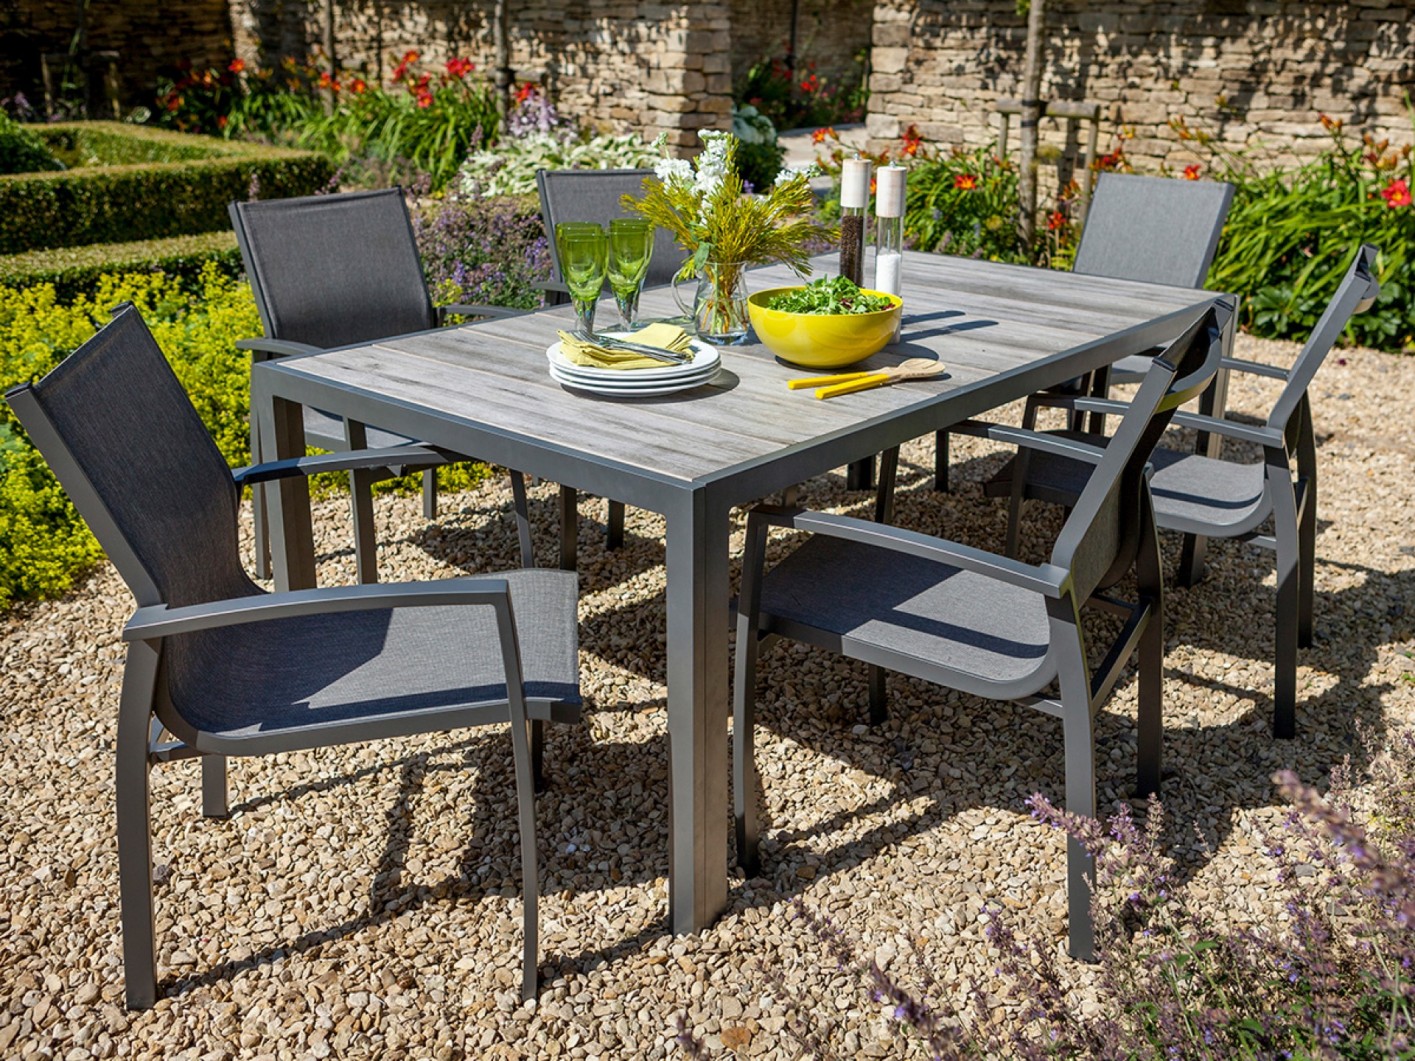  aluminium garden furniture sets uk